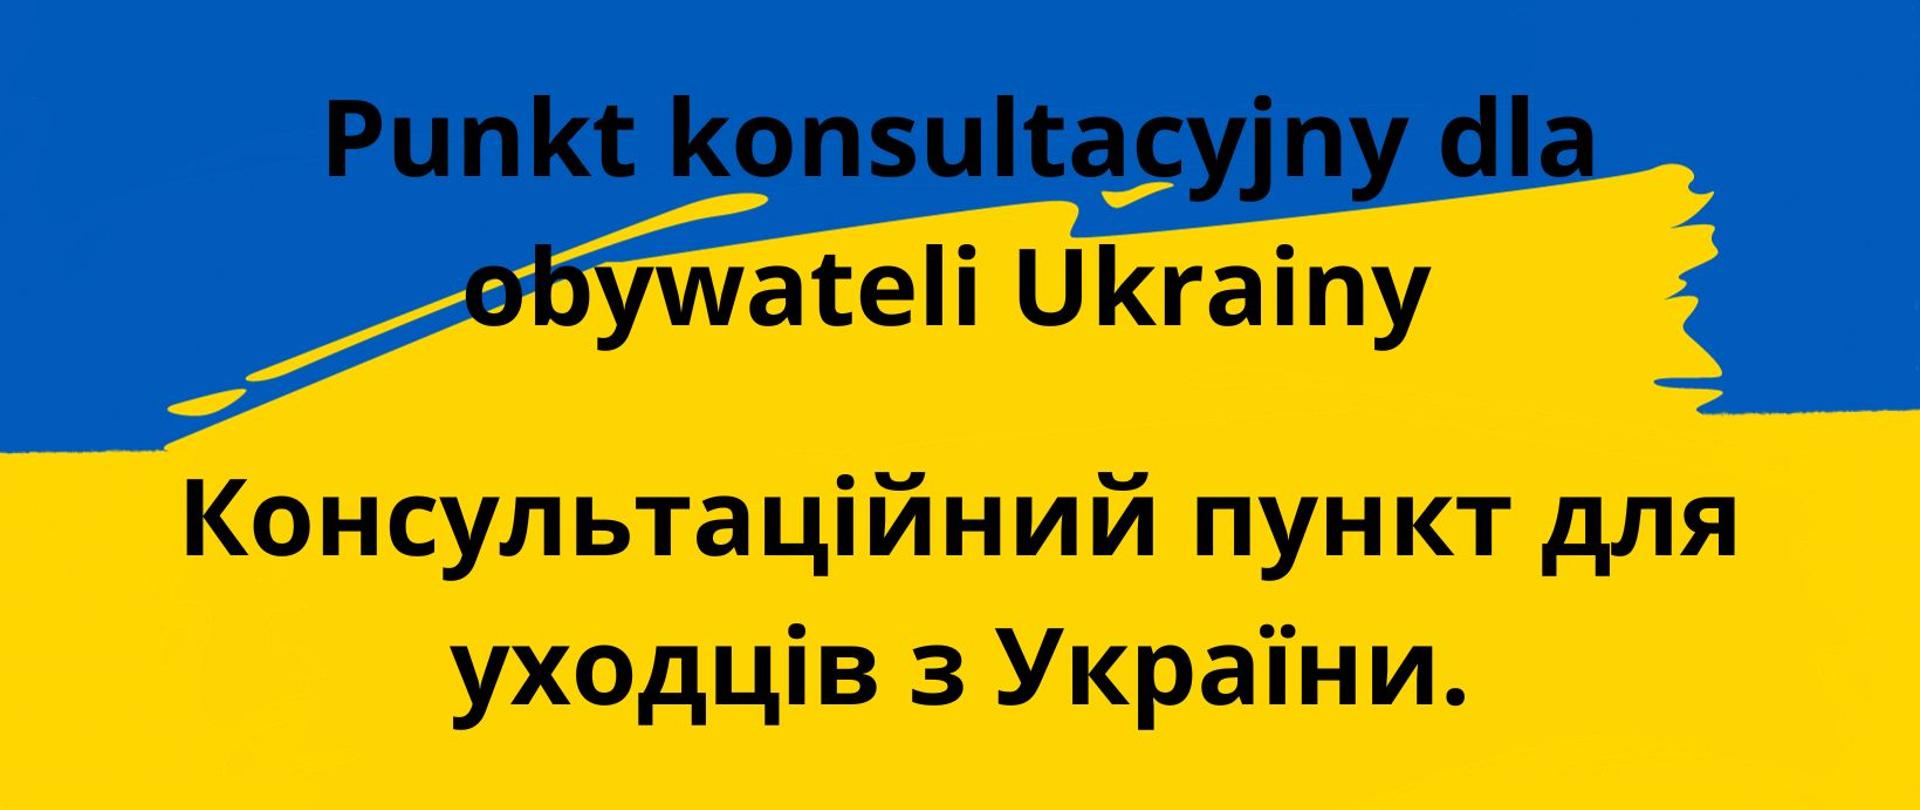 Baner na niebiesko-żółtym tle napis w języku polskim i ukraińskim - punkt konsultacyjny dla obywateli Ukrainy 